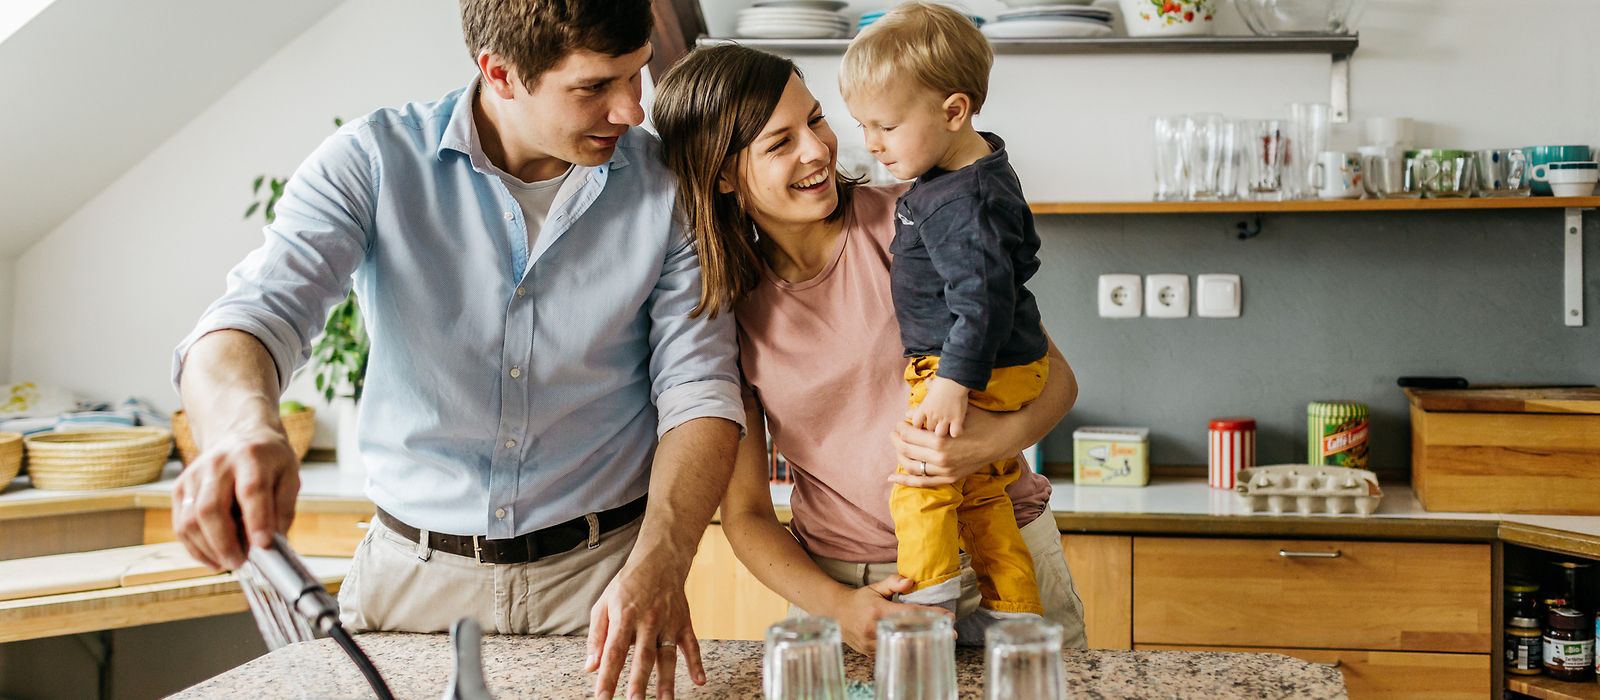 Eine junge Familie steht in der Küche beim Abwasch